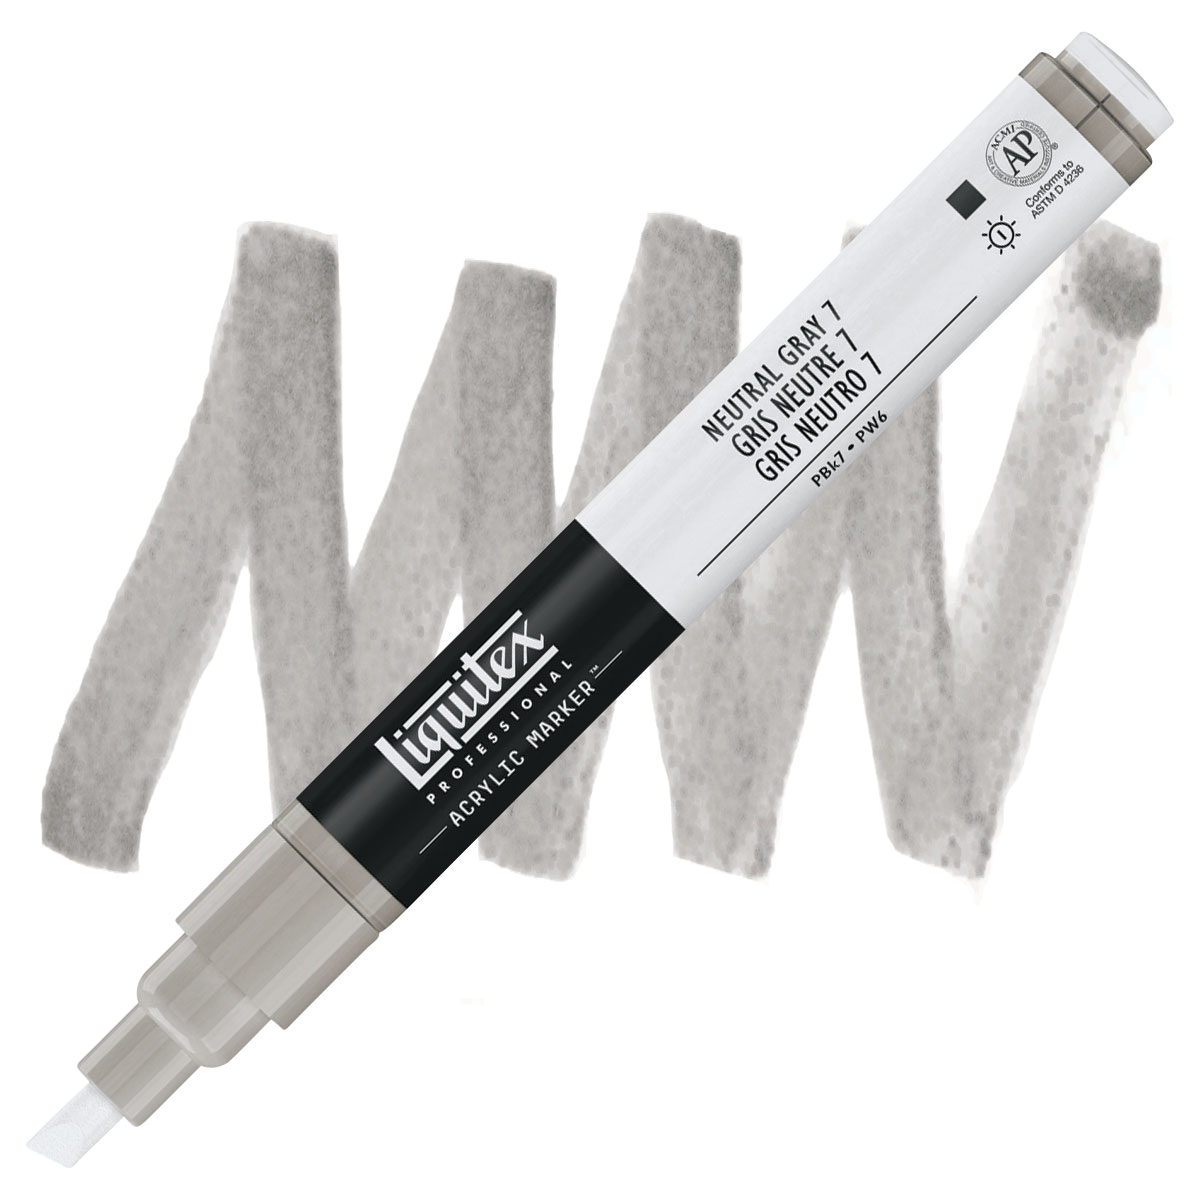 Liquitex Paint Marker - Carbon Black, 2mm Tip